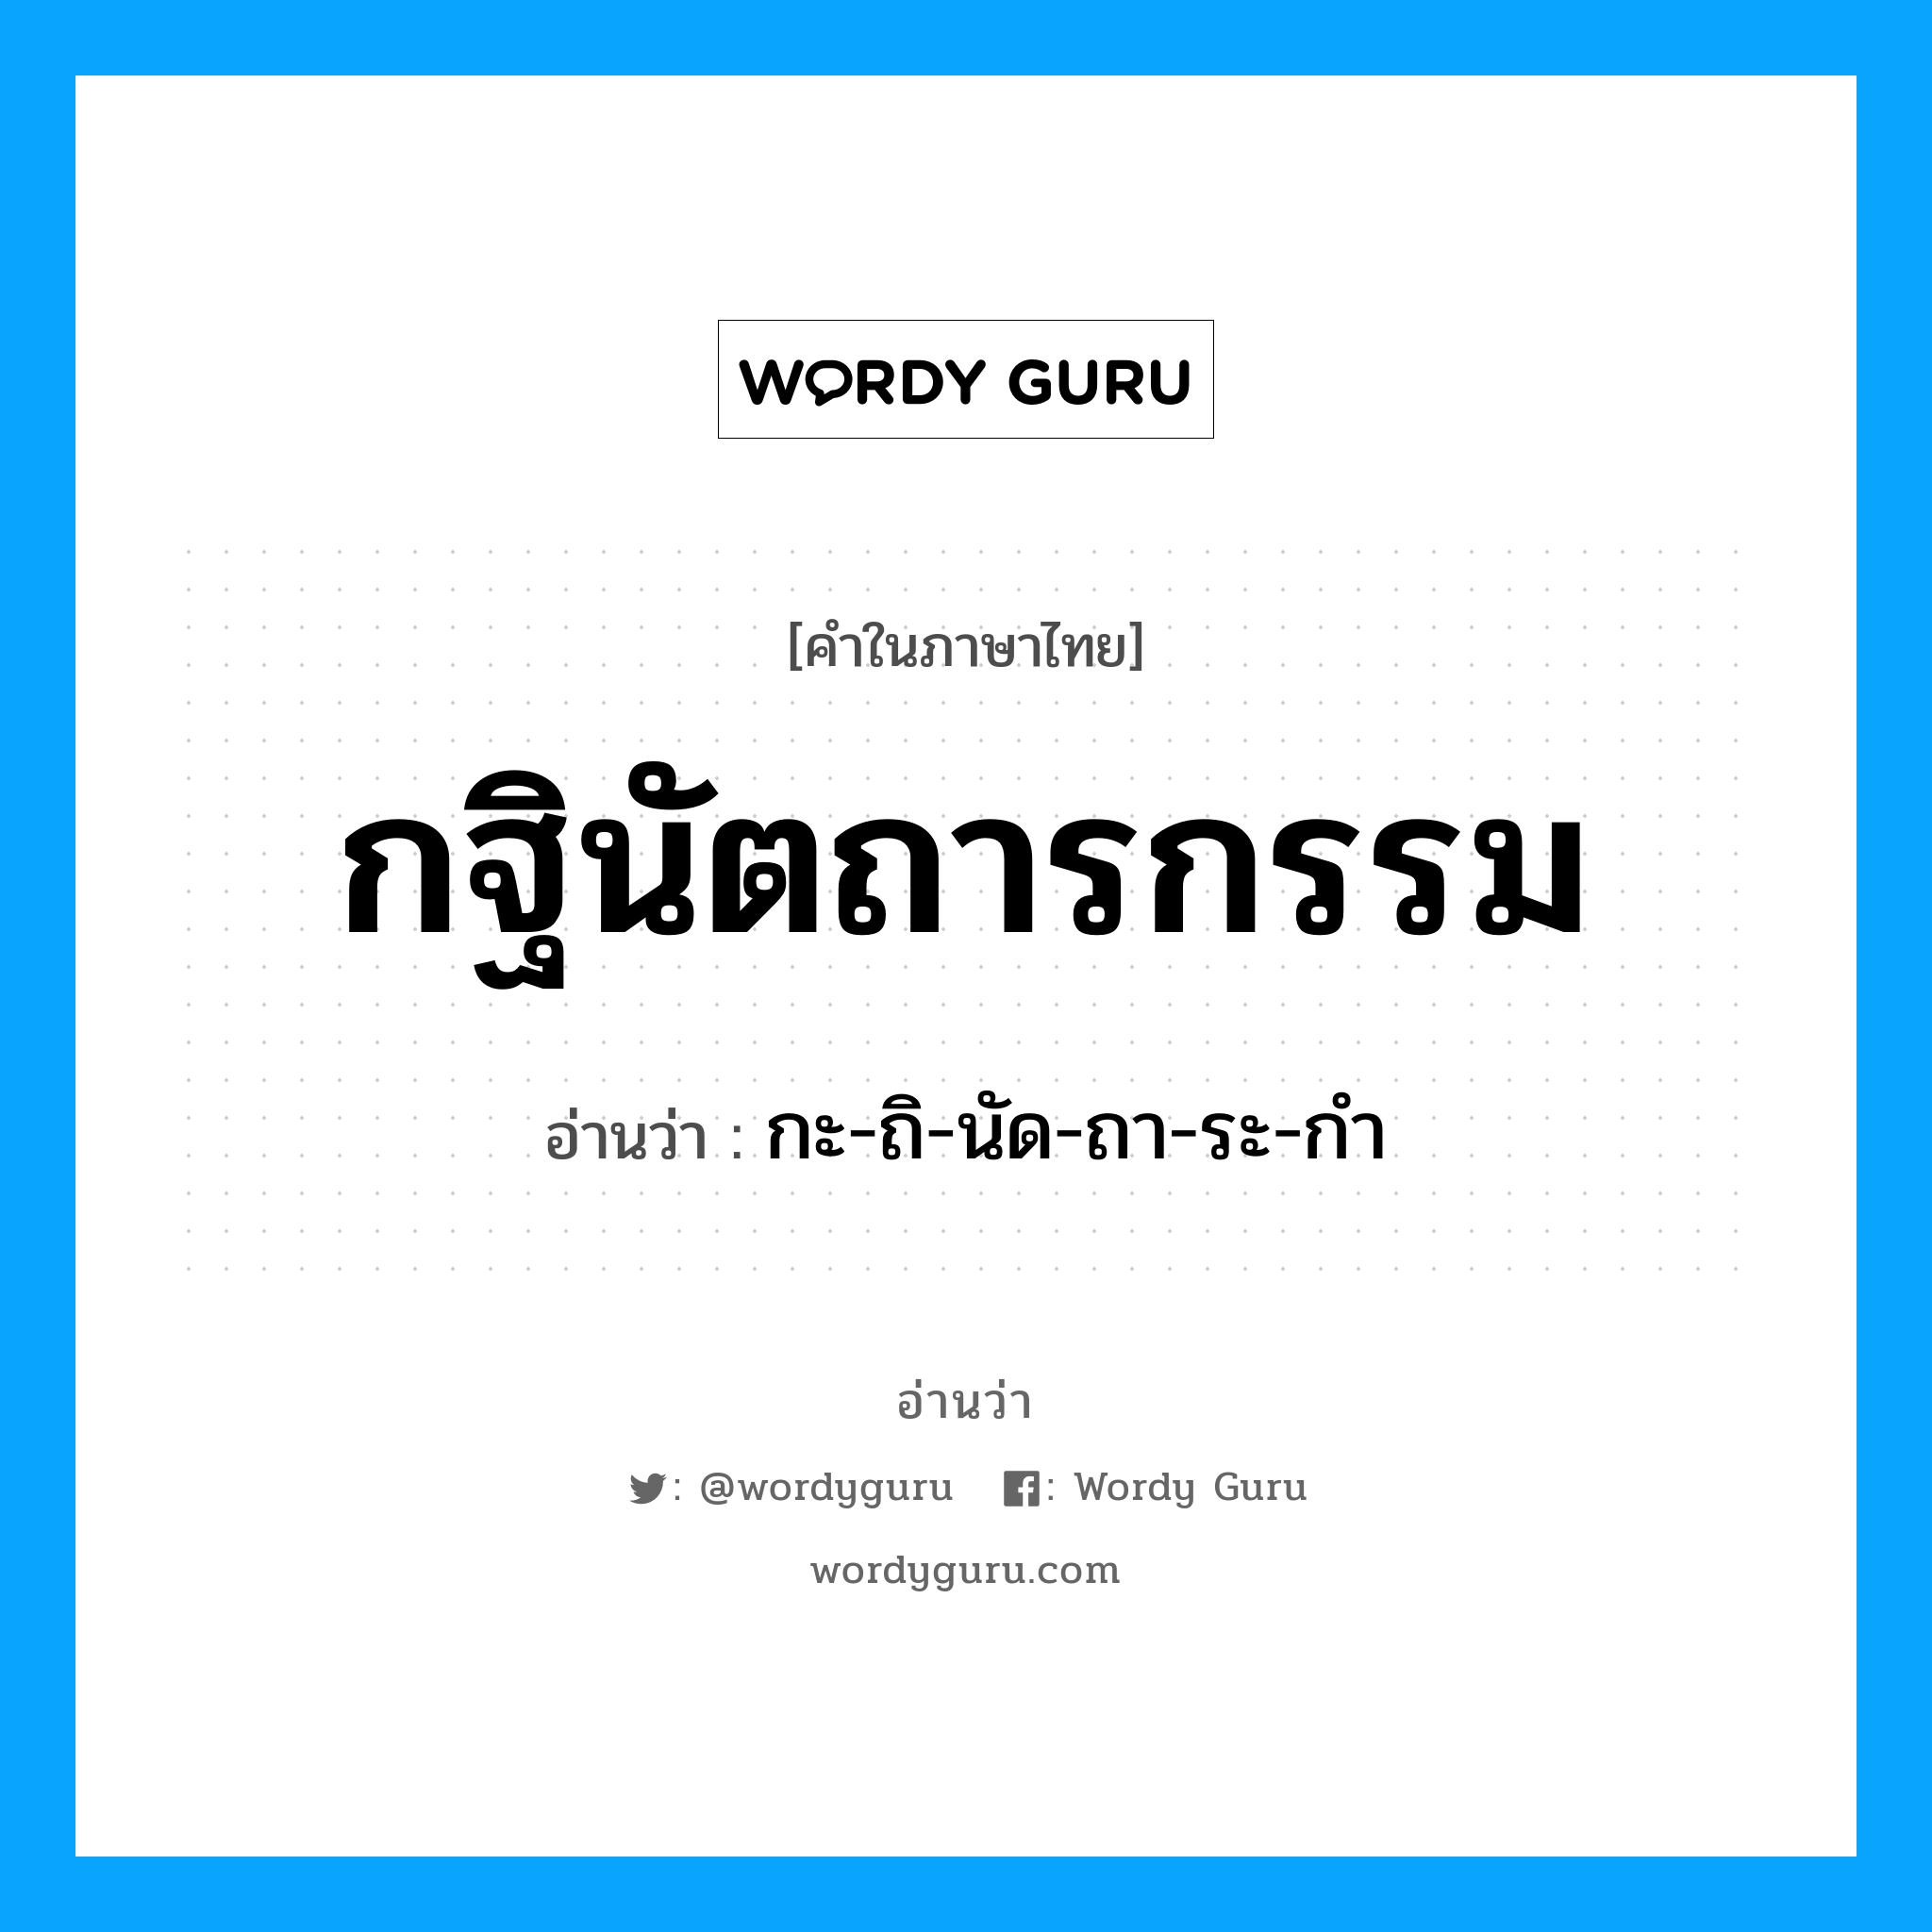 กะ-ถิ-นัด-ถา-ระ-กํา เป็นคำอ่านของคำไหน?, คำในภาษาไทย กะ-ถิ-นัด-ถา-ระ-กํา อ่านว่า กฐินัตถารกรรม